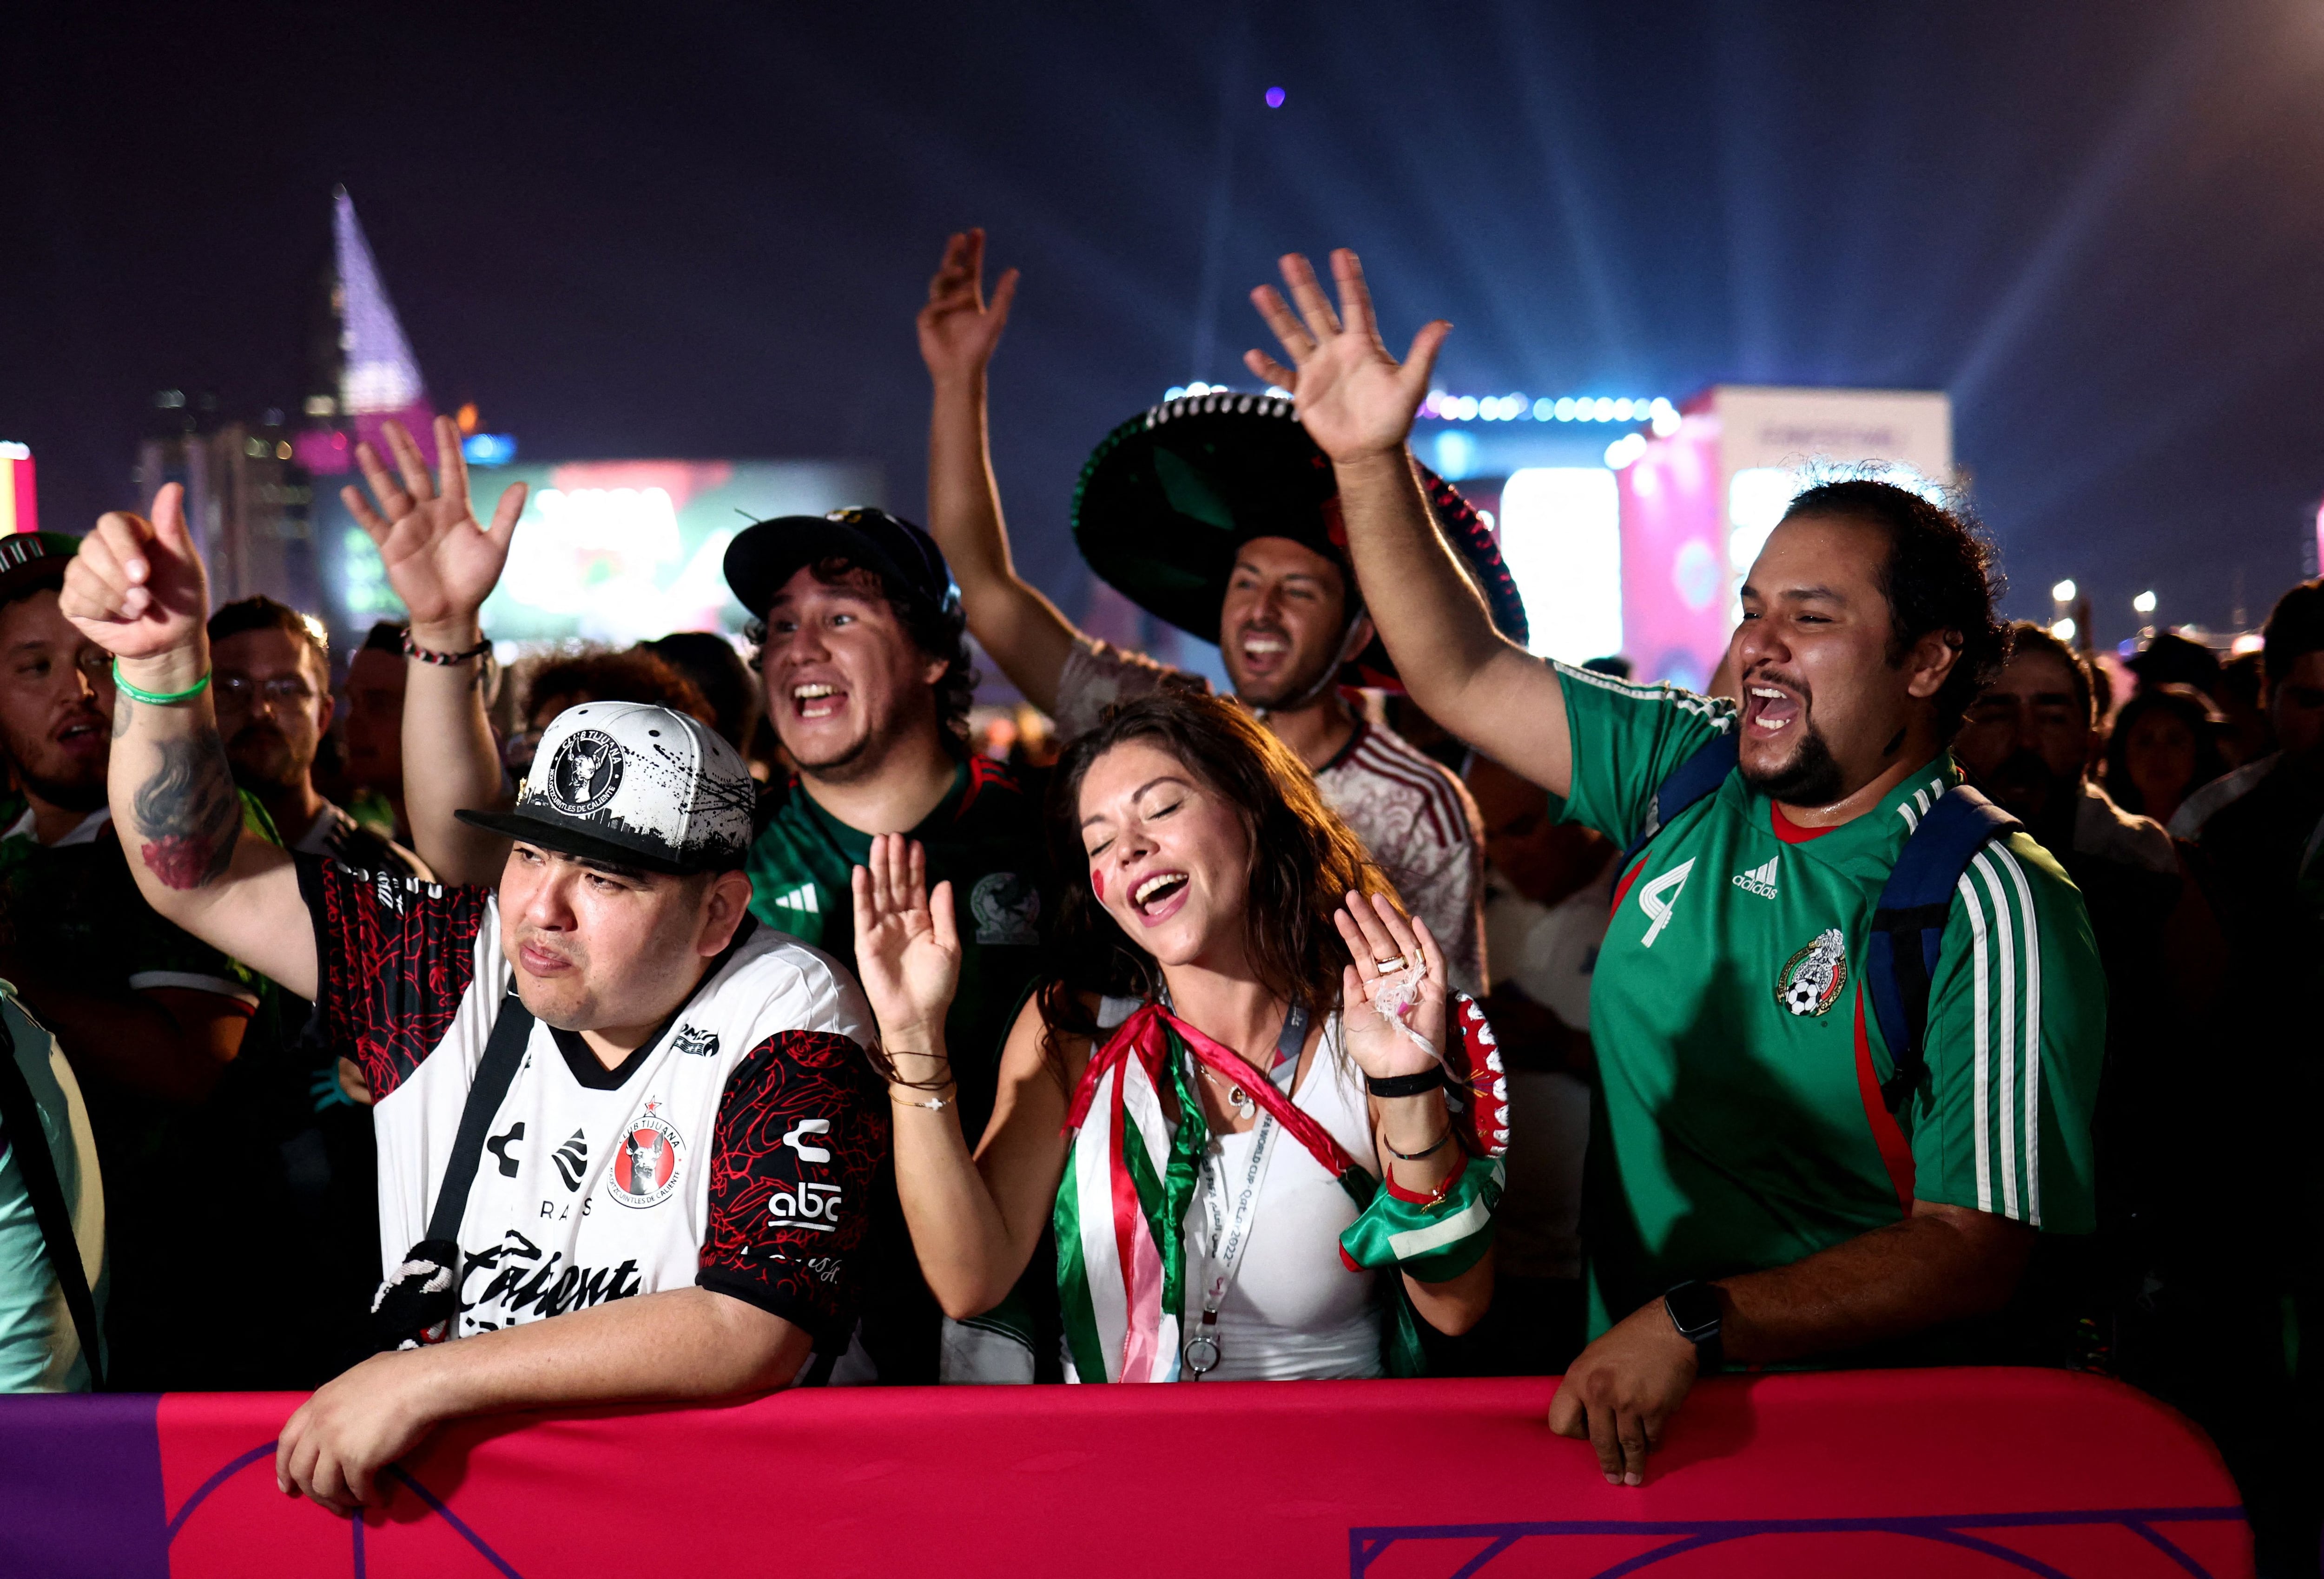 Foto de archivo de aficionados mexicanos en la Copa del Mundo. Parque Al Bidda, Doha, Qatar. 19 de noviembre de 2022.
REUTERS/Marko Djurica